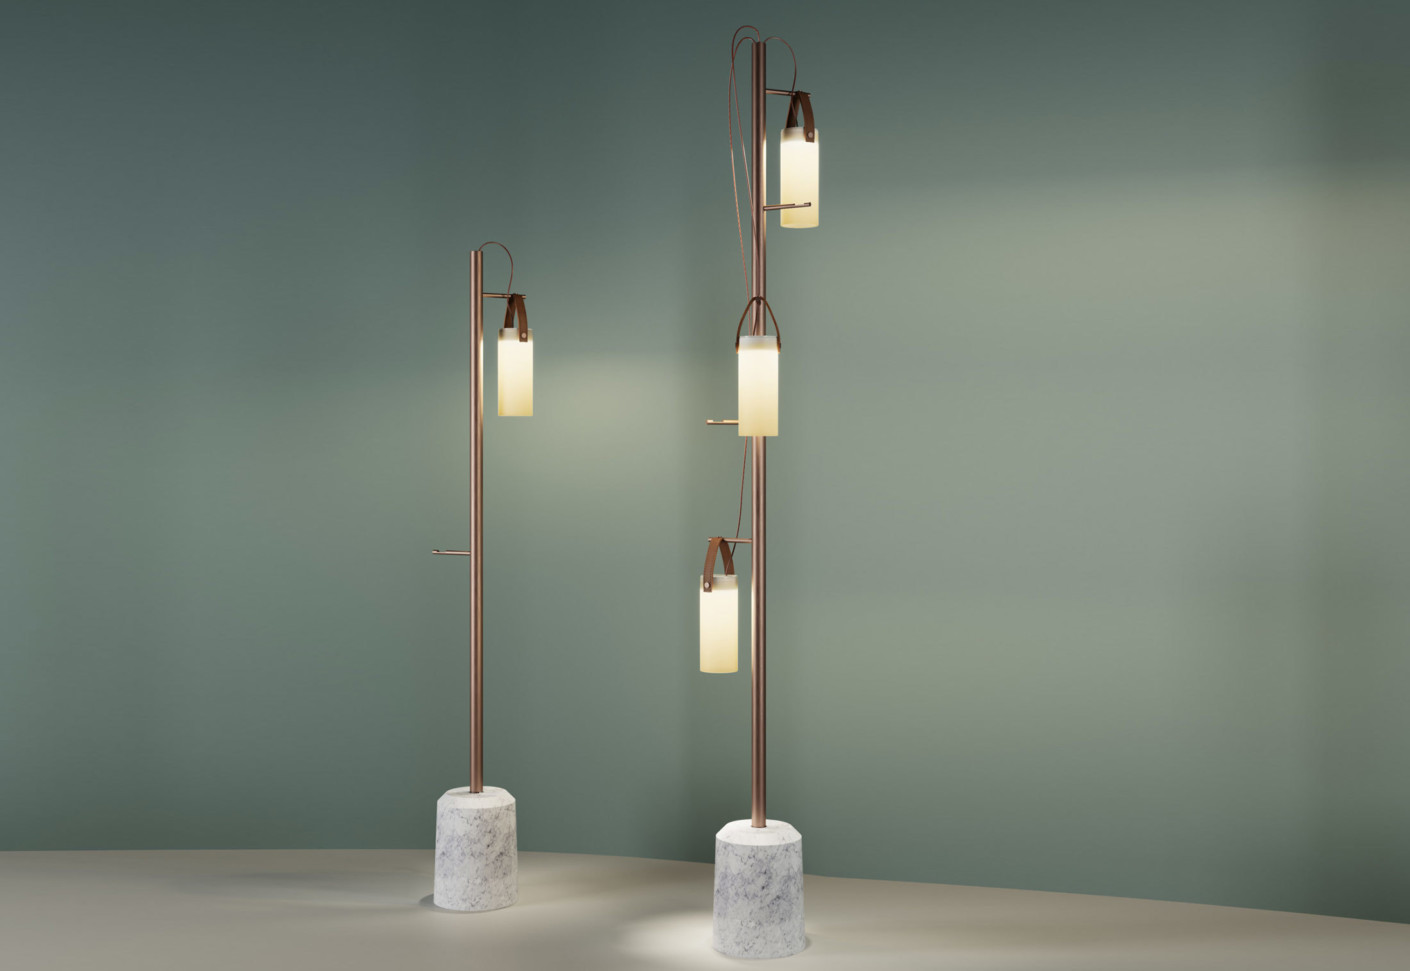 Galerie Lamp by Federico Peri for FontanaArte